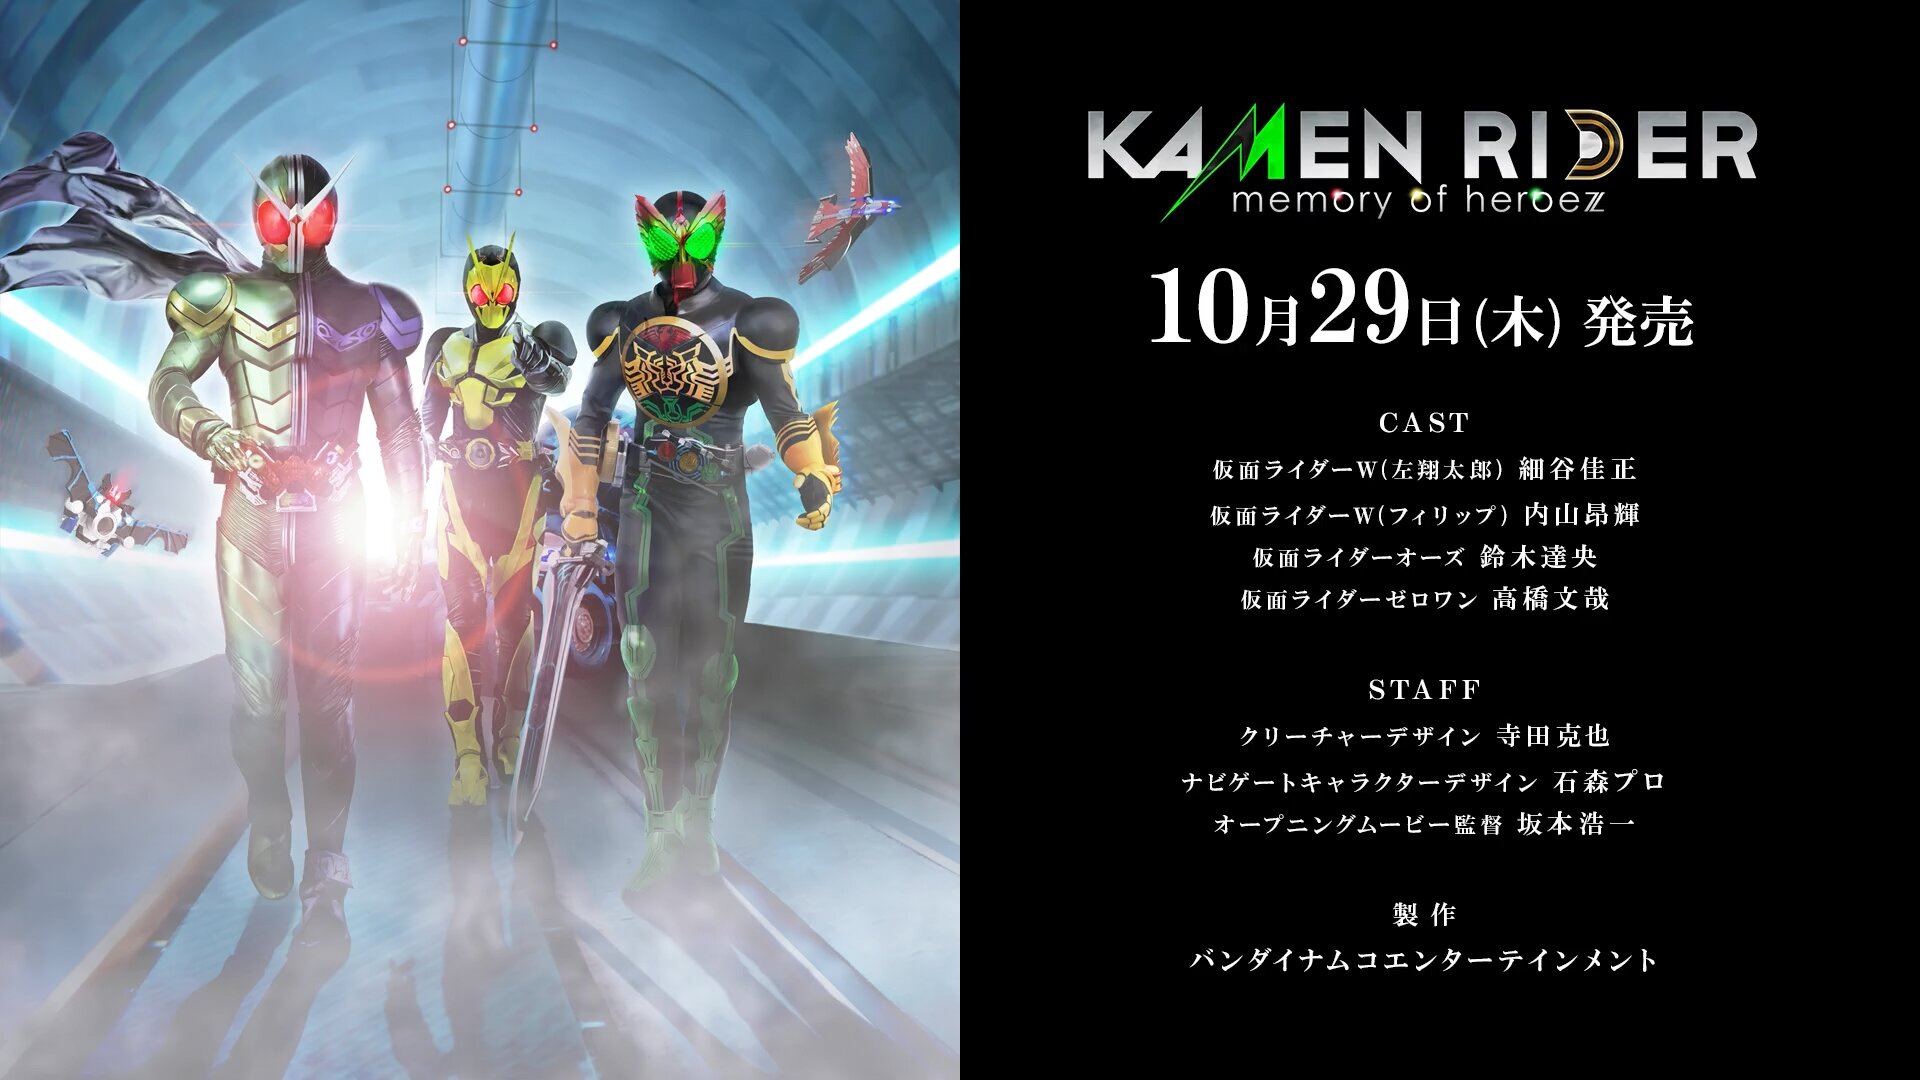 Kamen Rider Memory Of Heroez 10 27発売 まさかwとoooも主役 黒詩 紅月の奇行記録場 仮 台湾ゲーマーと日本コンテンツ